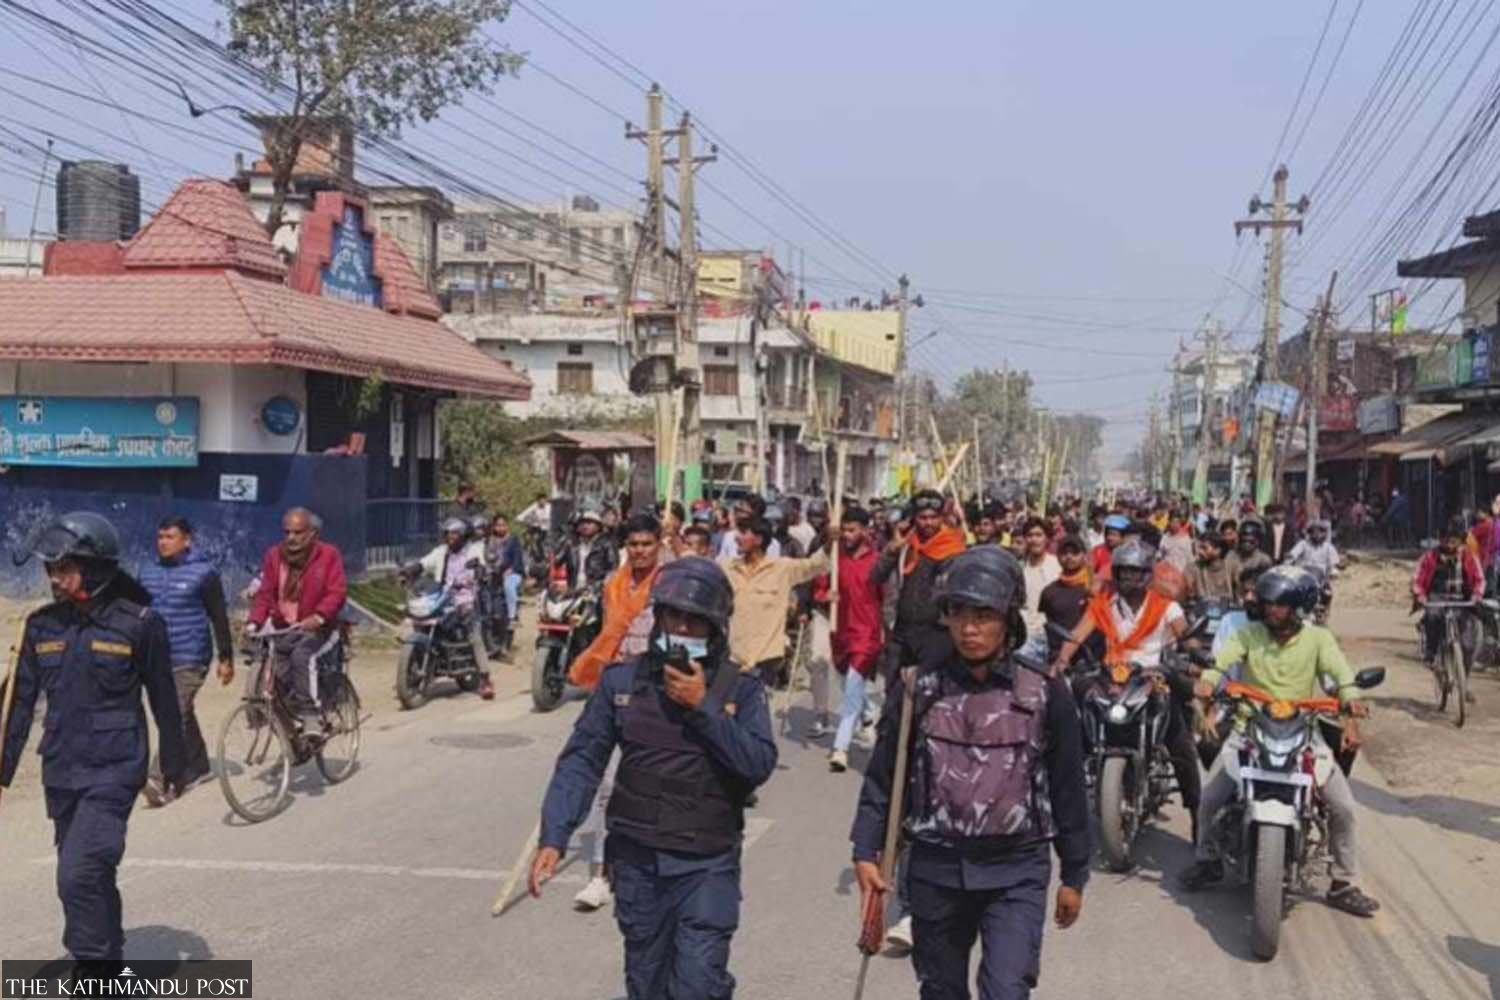 La administración del distrito impone un toque de queda en Birgunj después de una protesta por el choque por inmersión de los ídolos de Rautahat